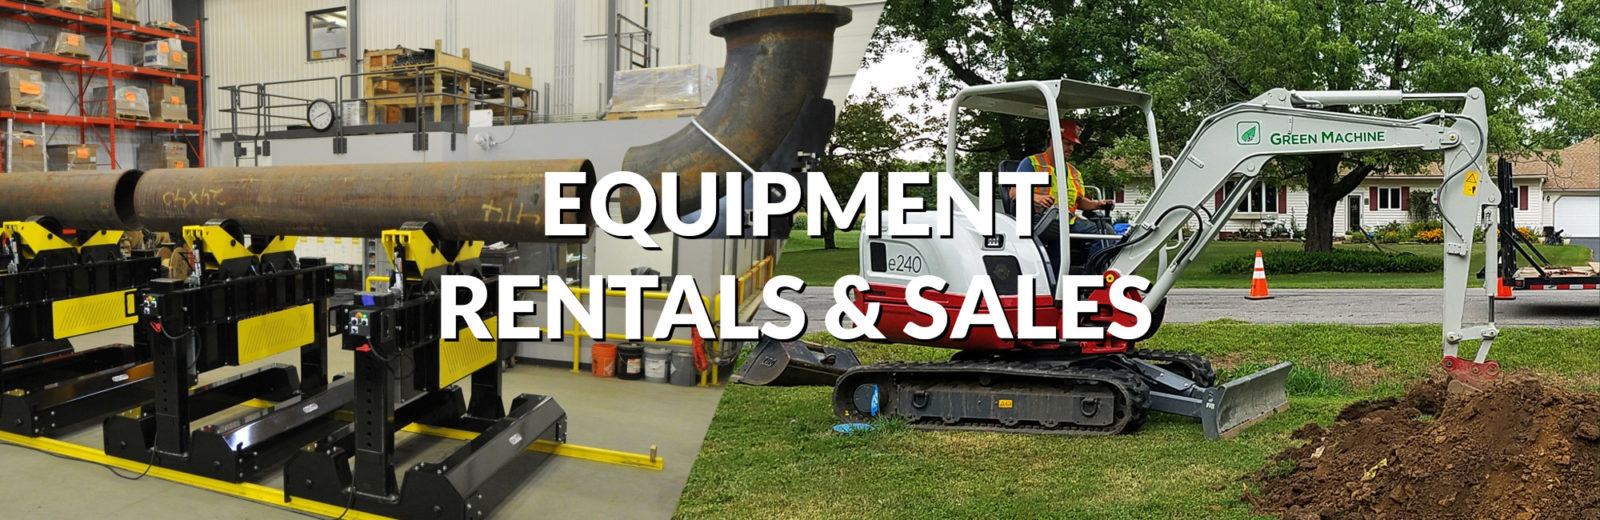 Equipment Rentals & Sales